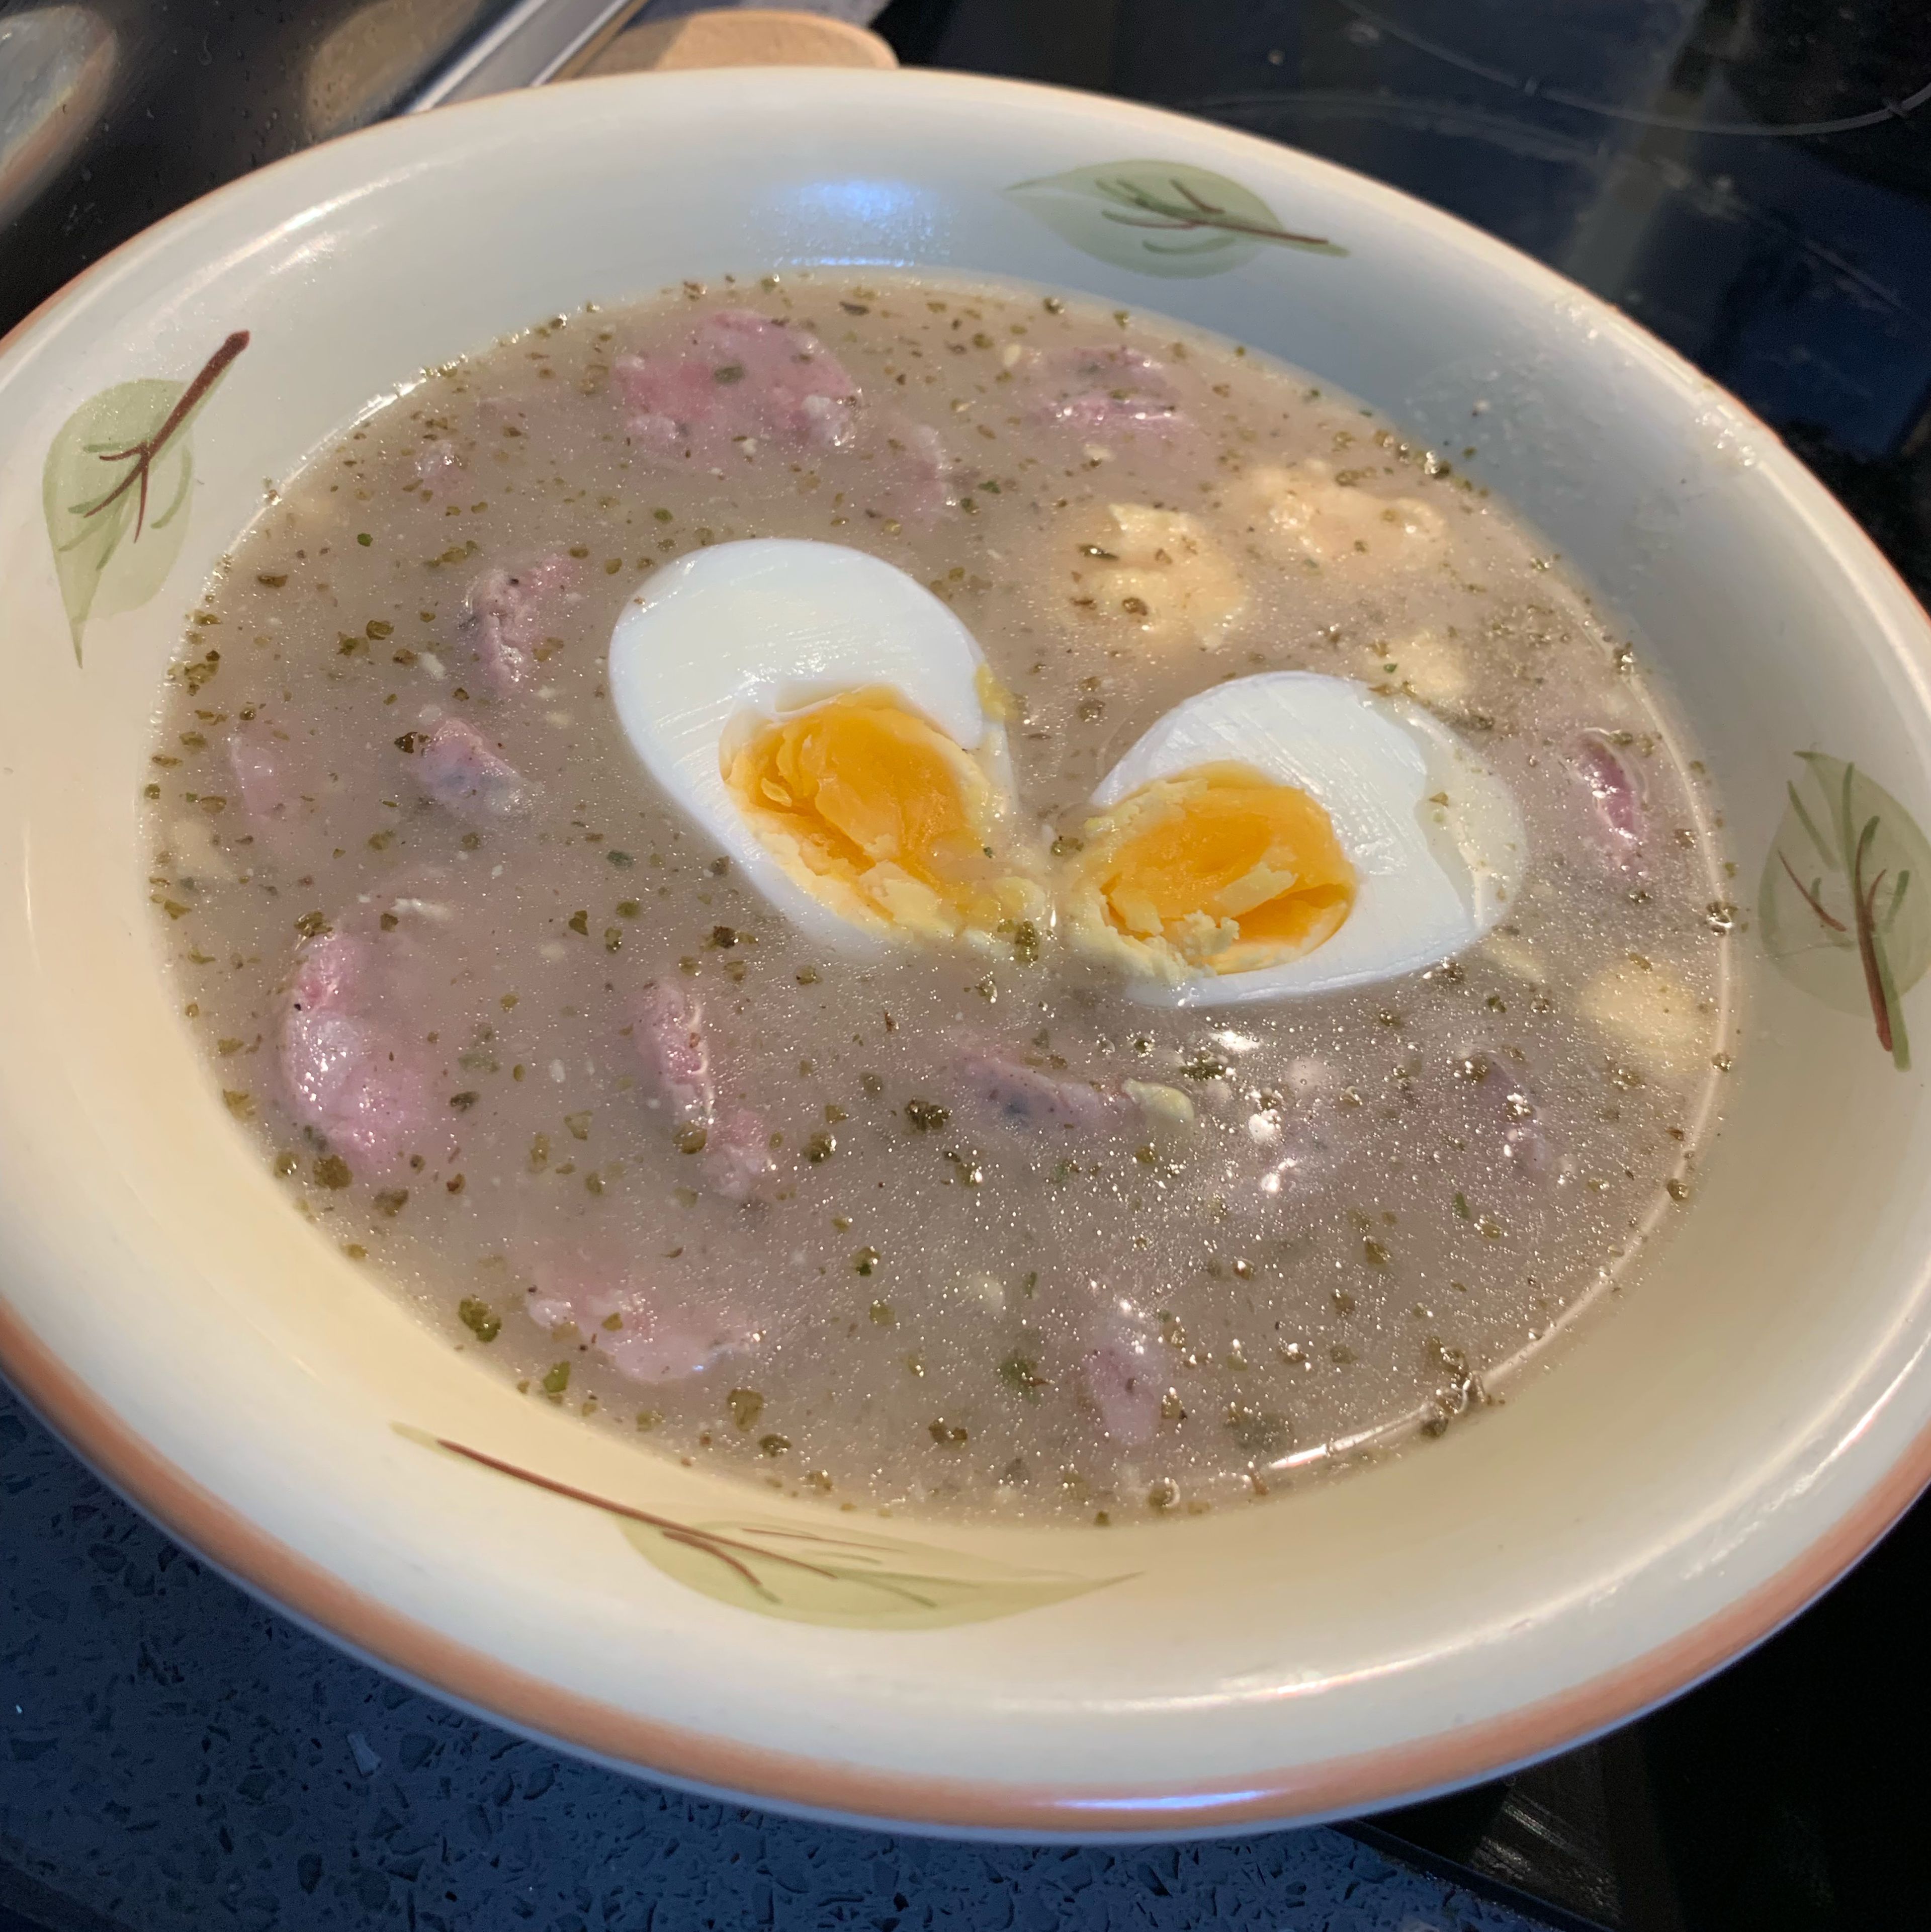 Żurek - Polish rye sour soup